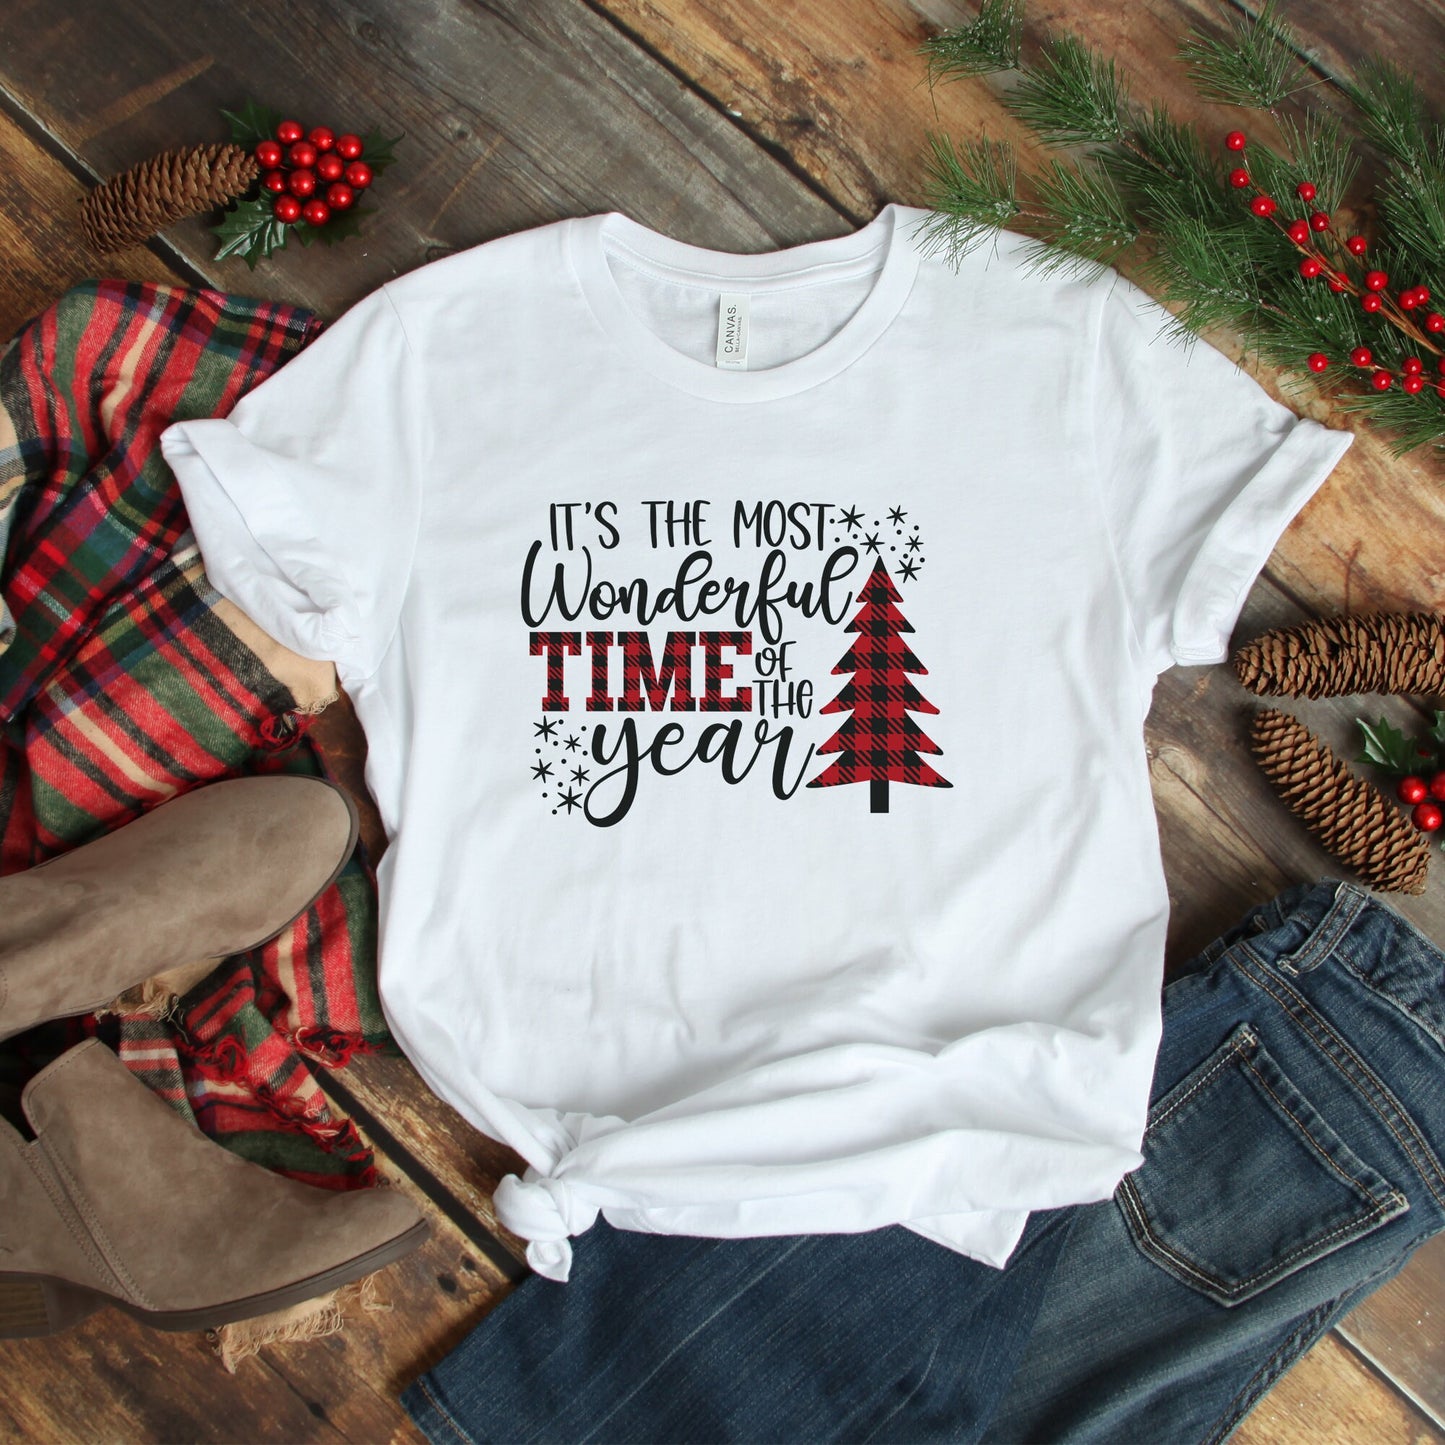 Christmas T-Shirt, Holiday Shirt, Christmas Gift, Christmas Tee, Christmas Family shirts, Christmas Kids, Christmas, plaid, womens, shirt